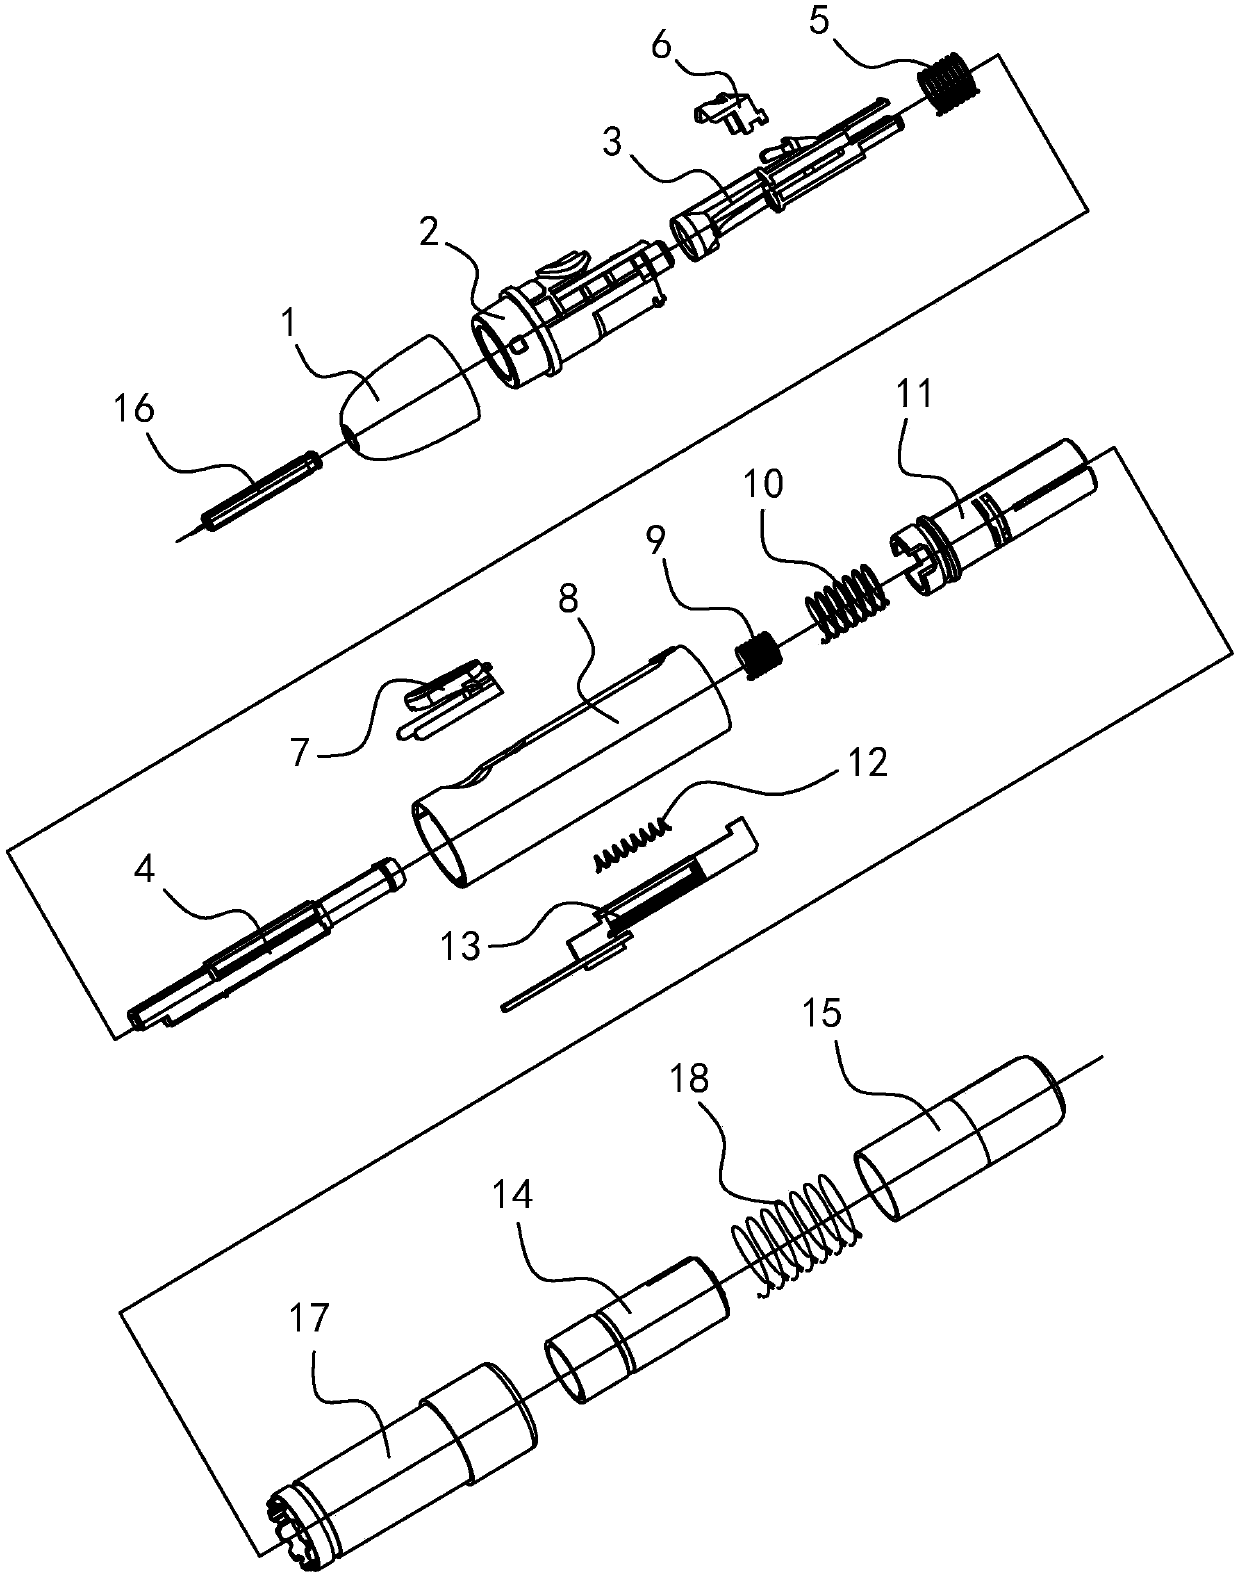 Dismounting-free cap assembling and disassembling needle type blood sampling pen